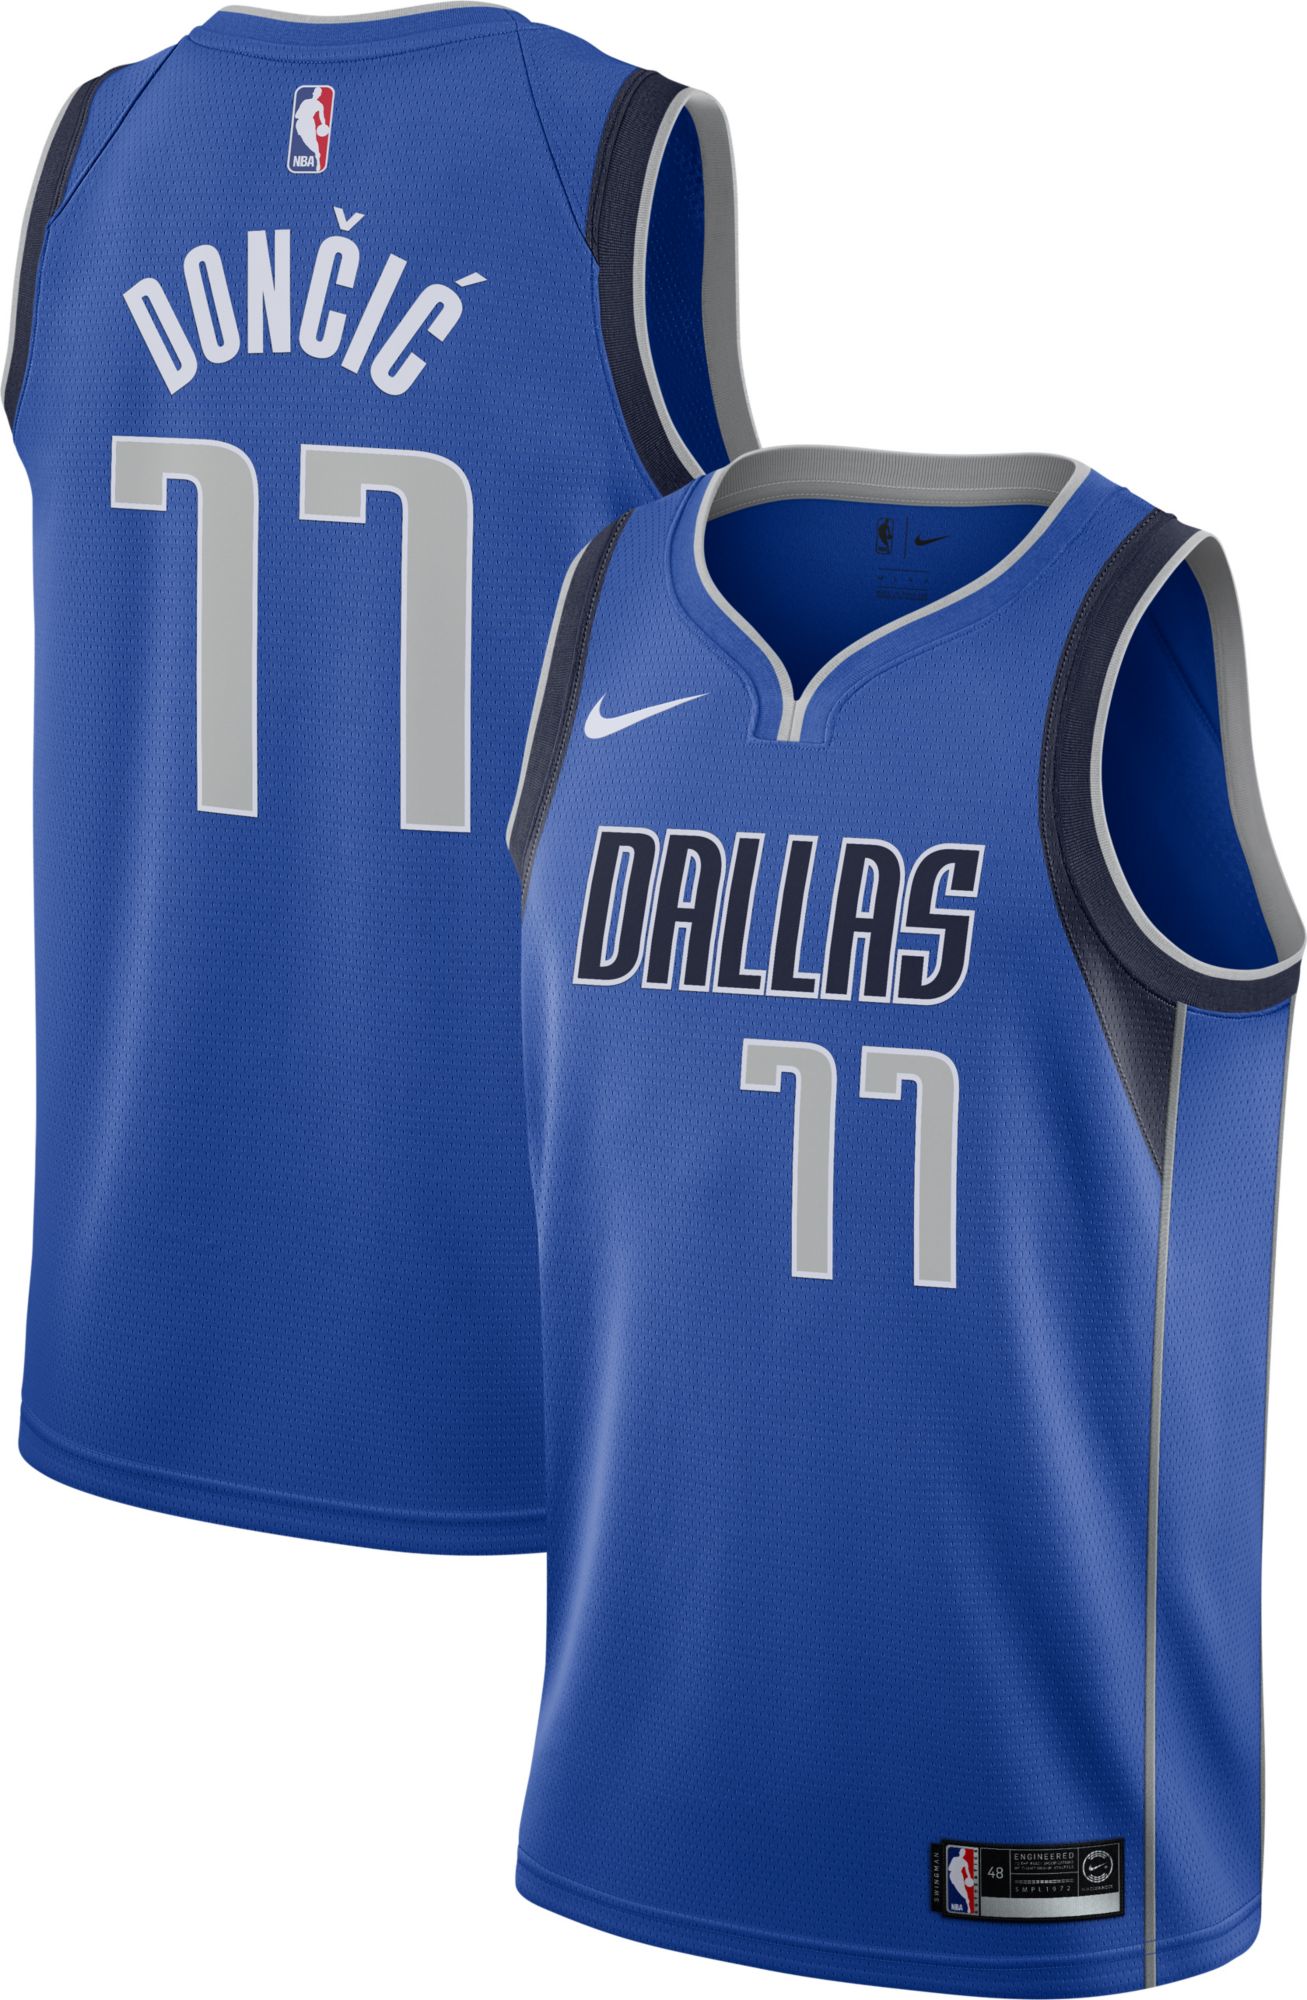 Dallas Mavericks Nike Dri-Fit Polo Men's Gray New S